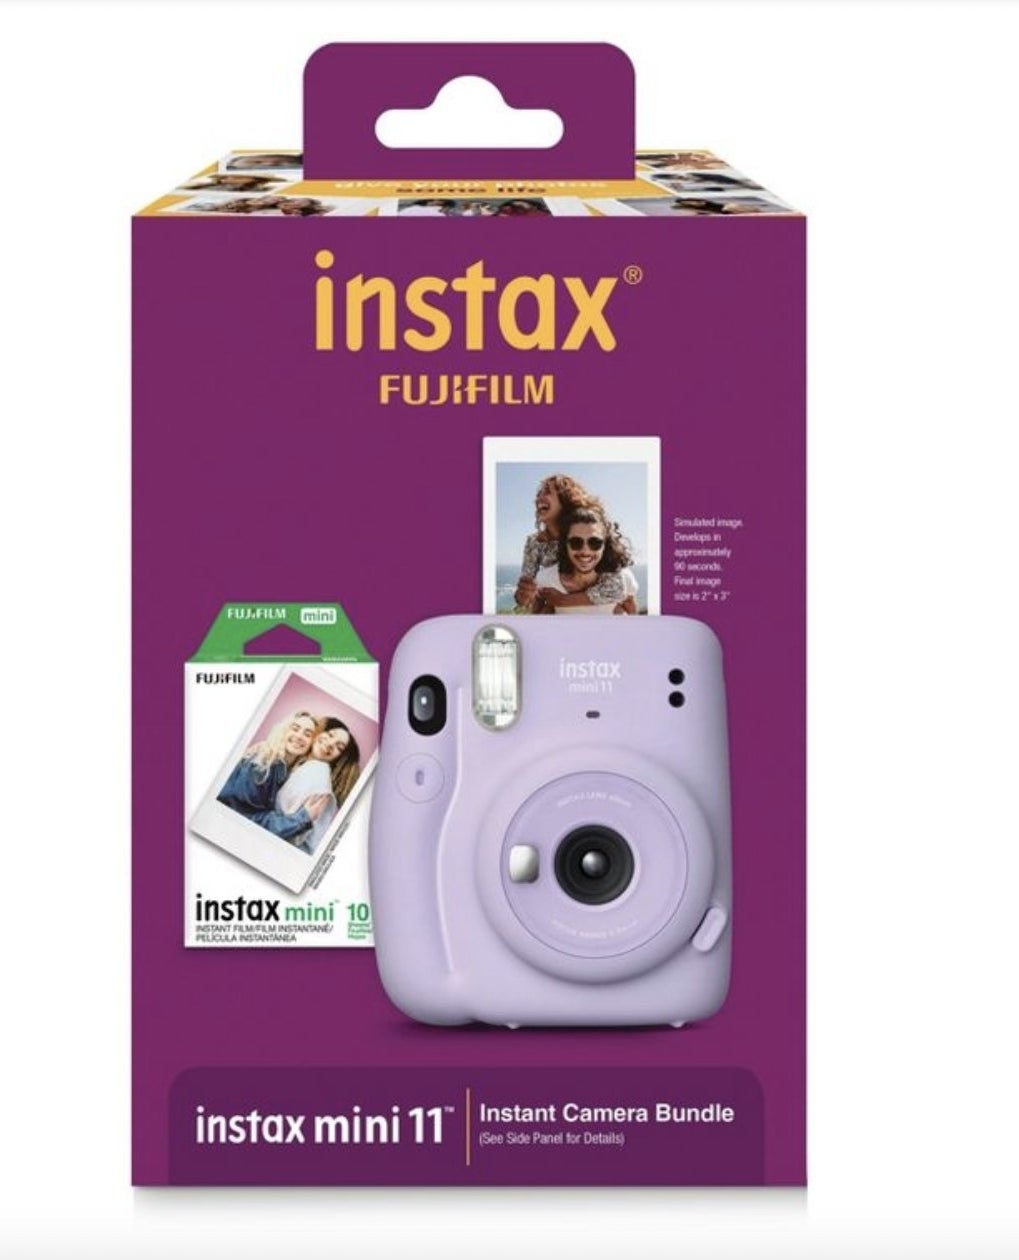 A lavender mini instant camera